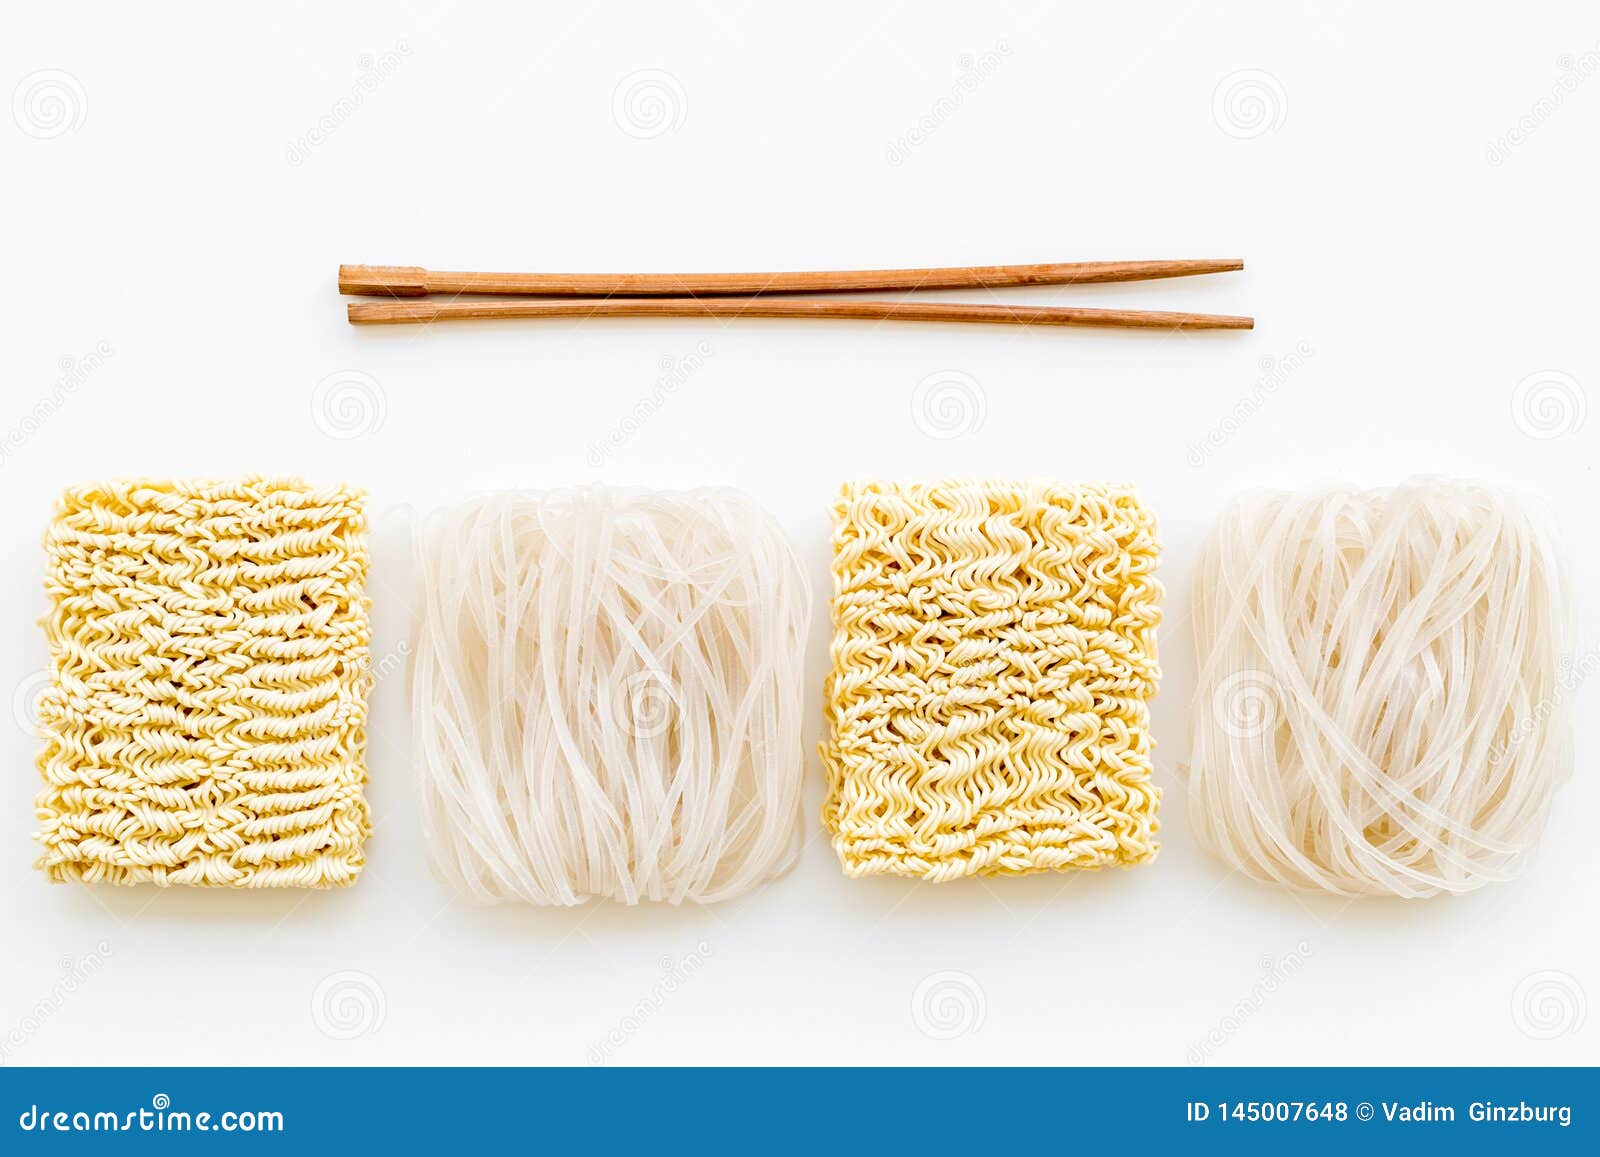 米细面条 面条 烹调在白色背景顶视图的中国人和日本料理设计的棍子库存照片 图片包括有米细面条 面条 烹调在白色背景顶视图的中国人和日本料理设计的棍子